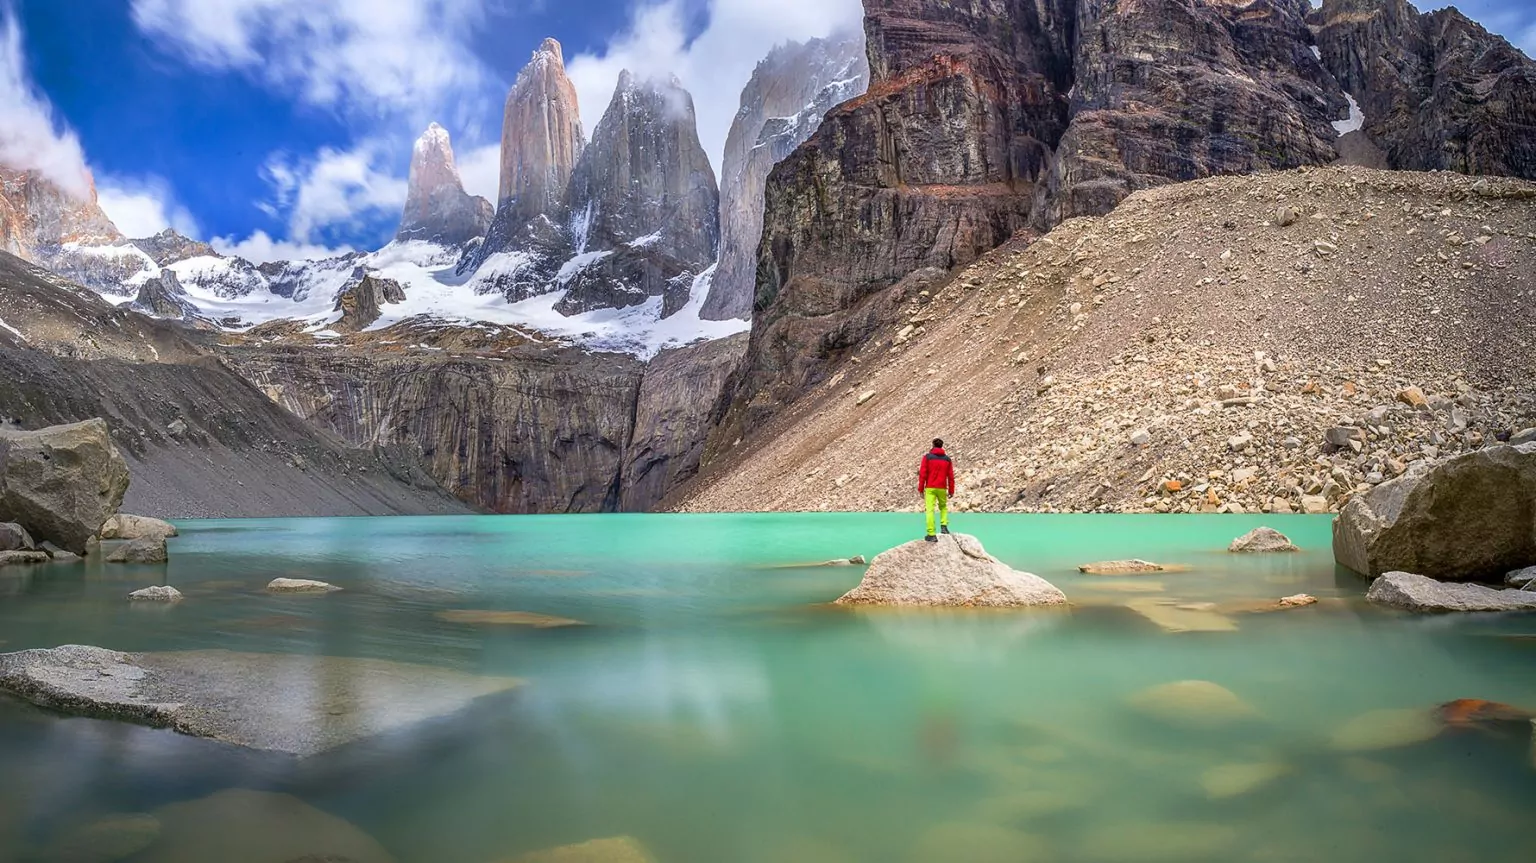 Guided Patagonia Hiking & Trekking Tours Wildland Trekking